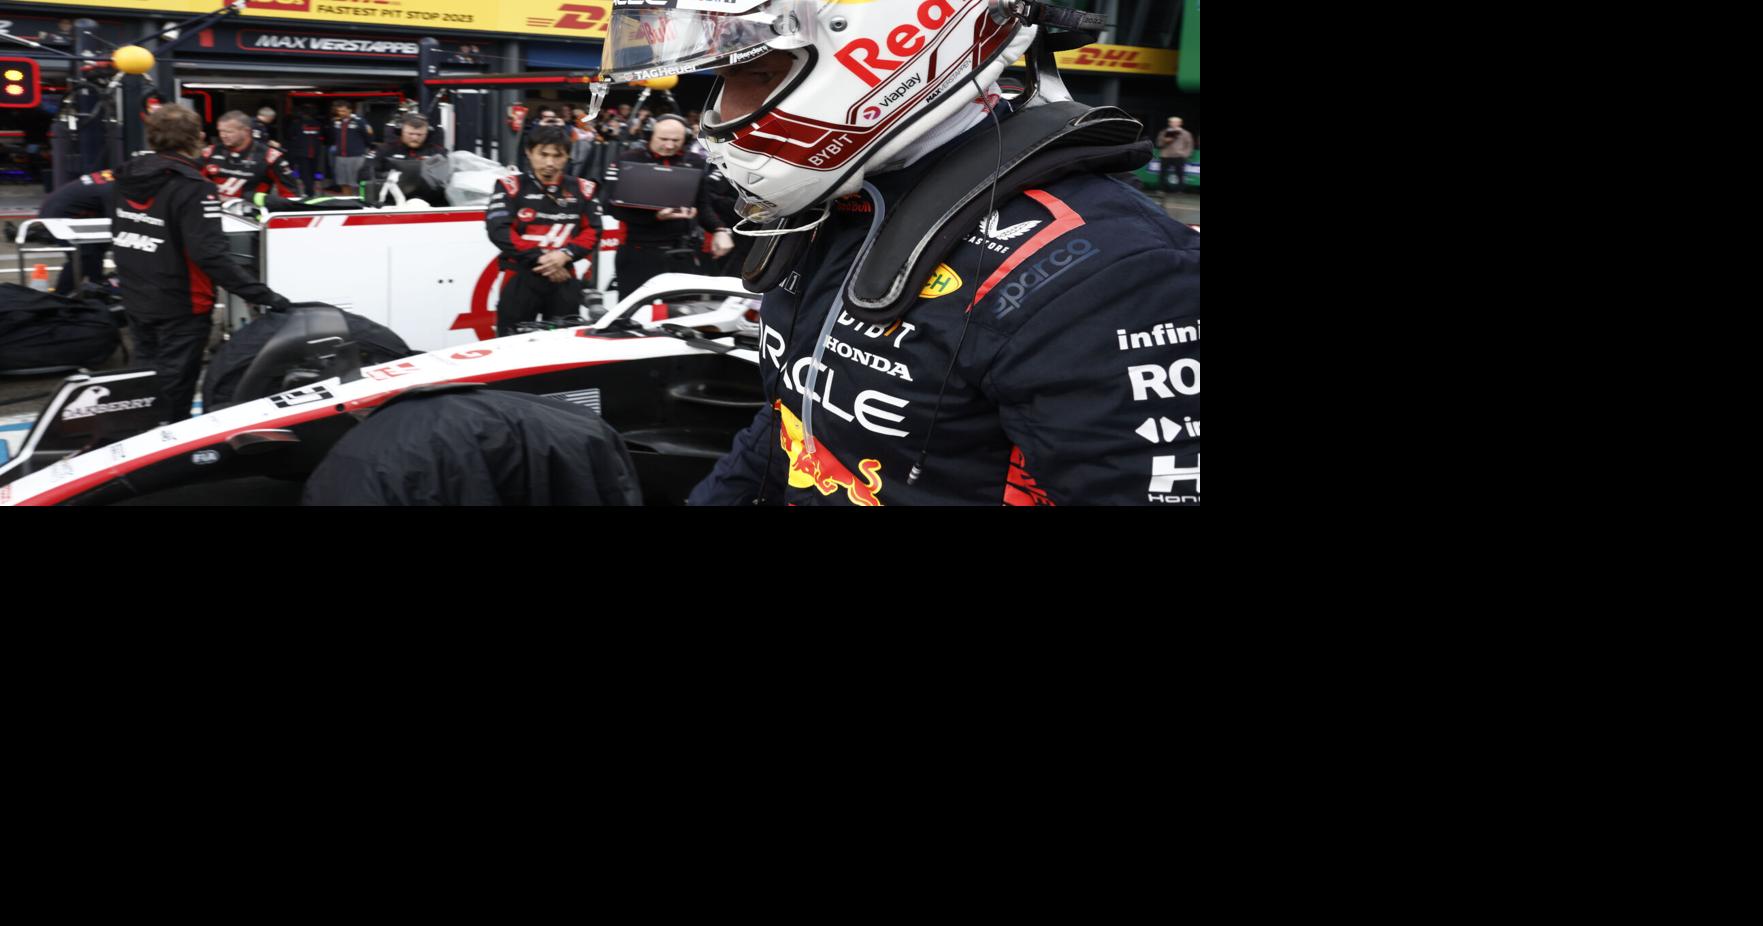 All eyes on Max Verstappen at Zandvoort with Sebastian Vettel's